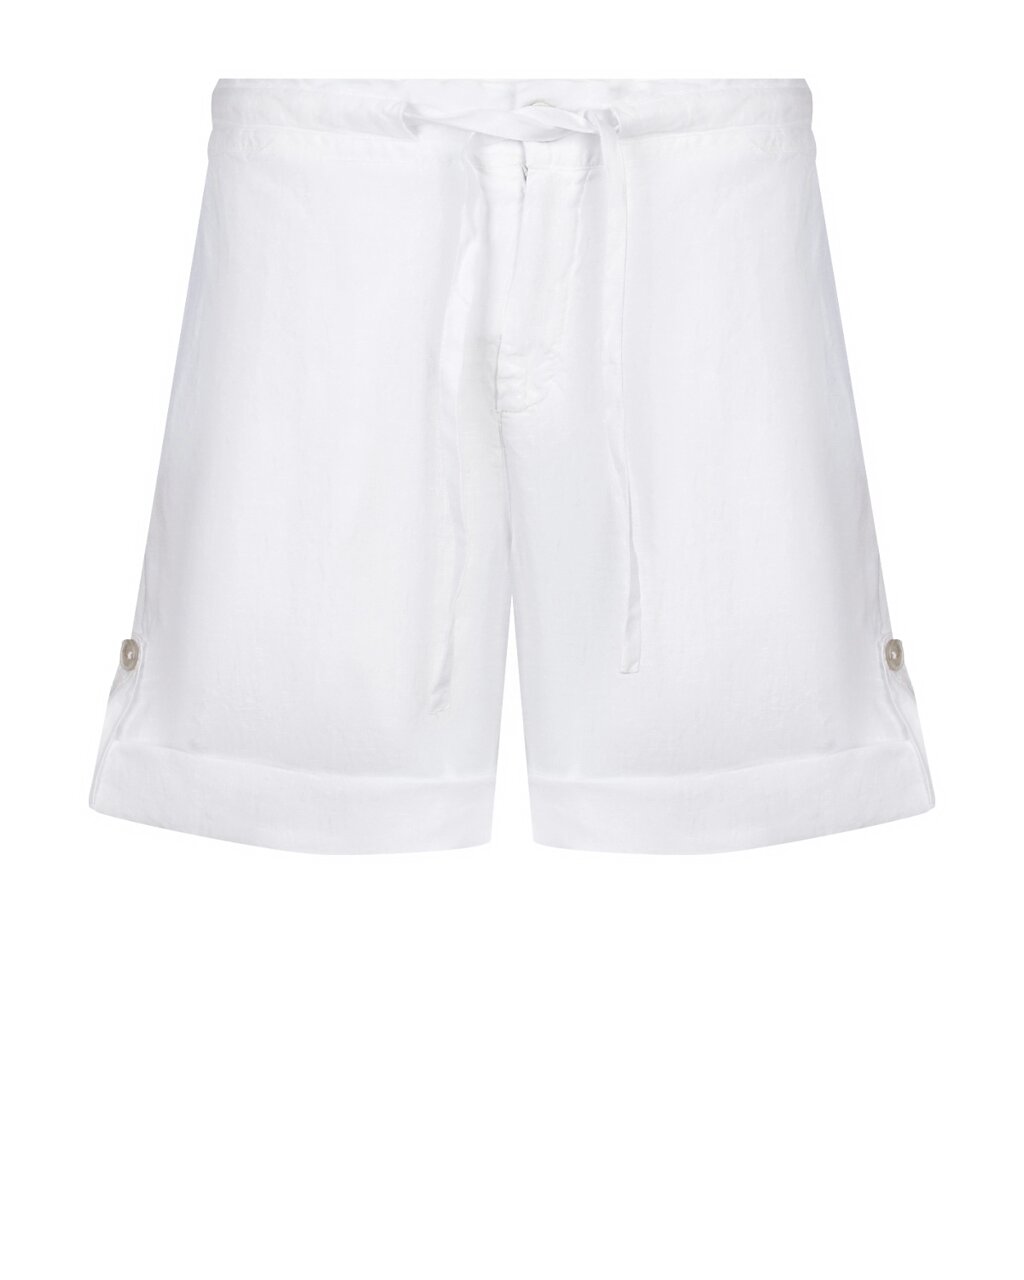 Льняные шорты с поясом на кулиске, белые 120% Lino от компании Admi - фото 1